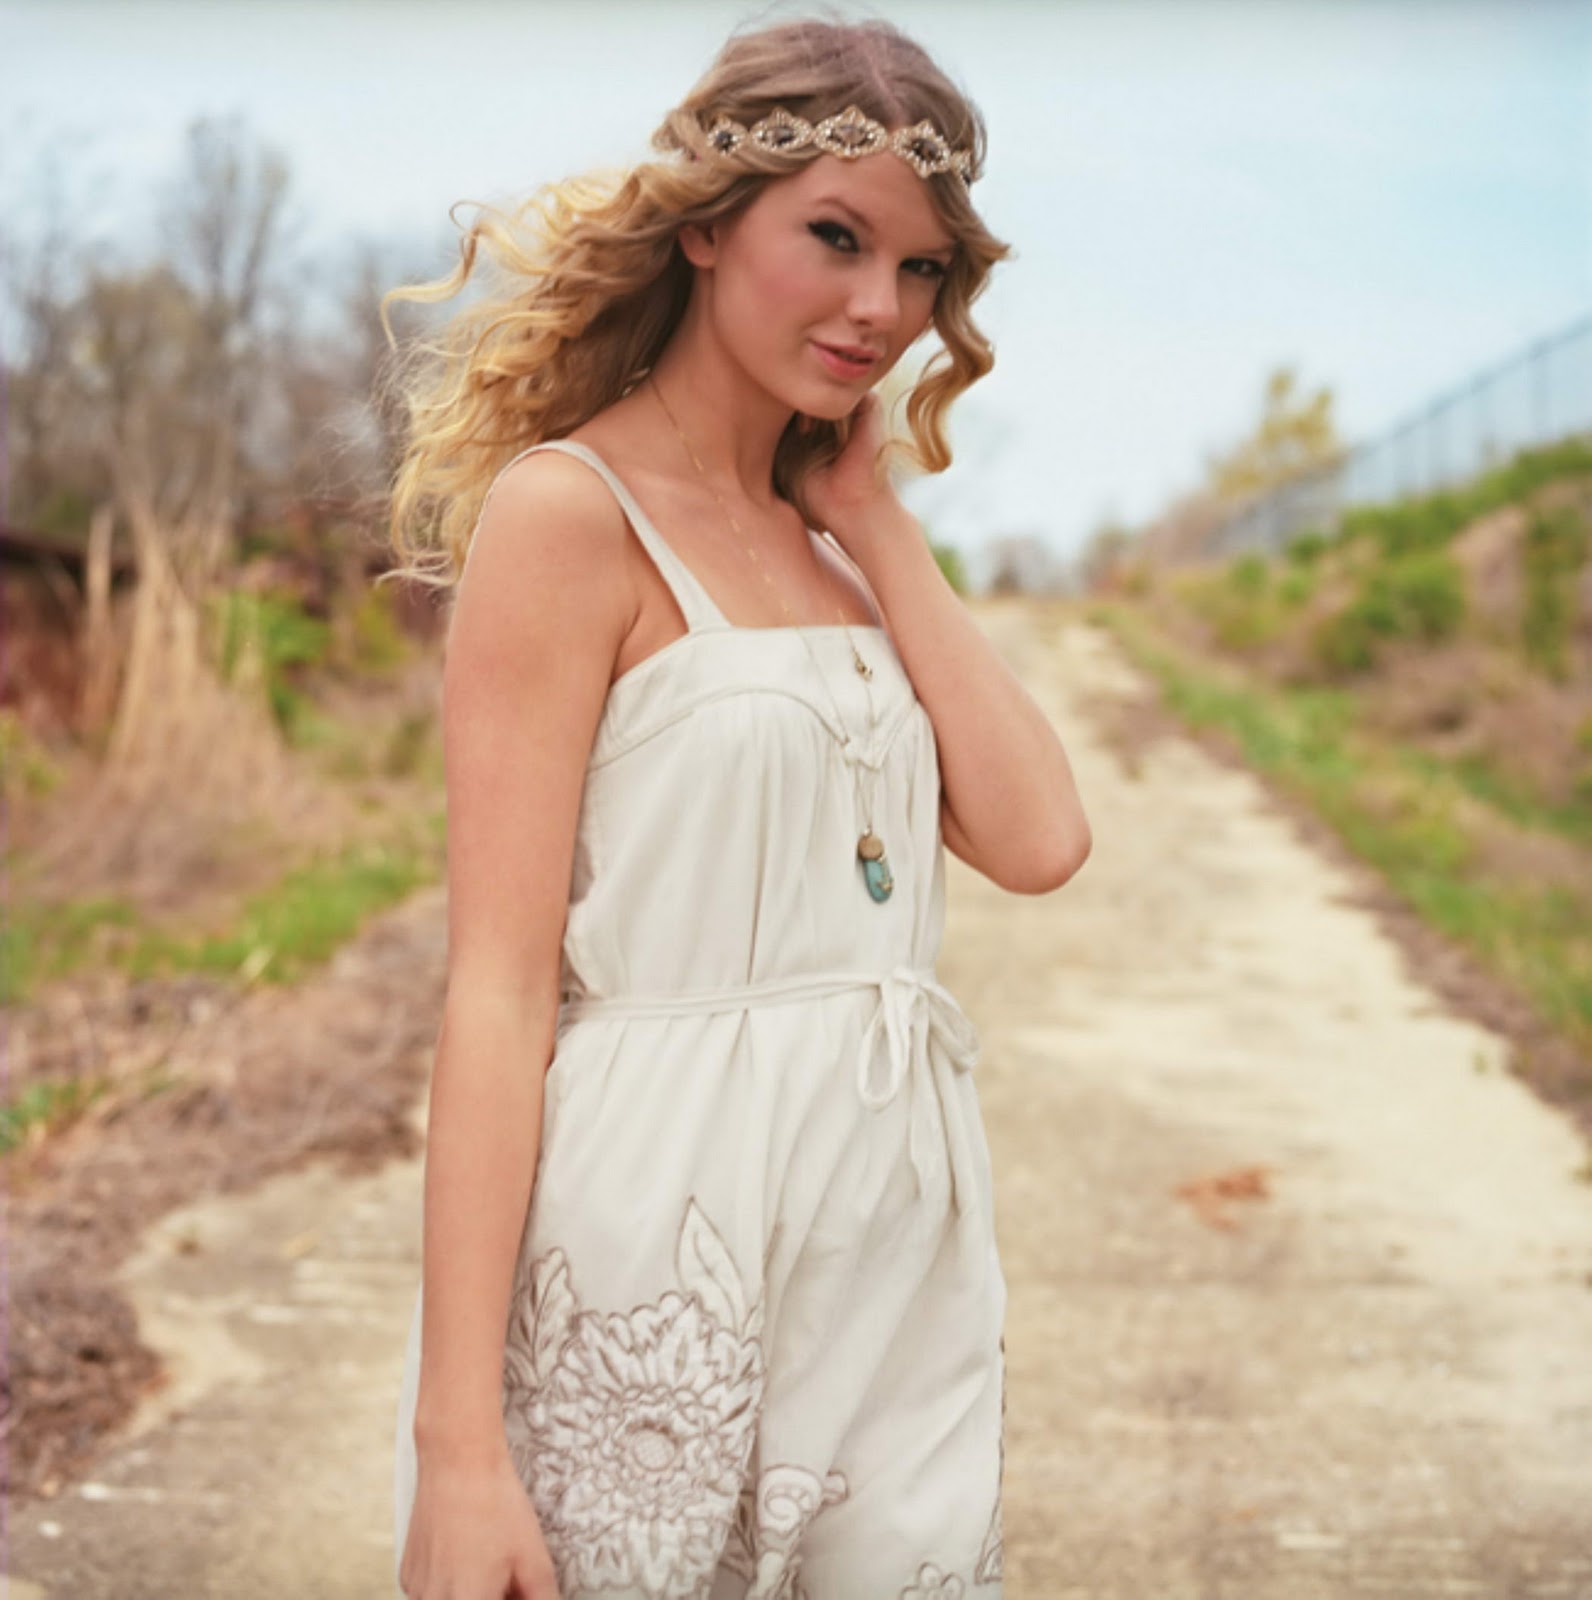 http://2.bp.blogspot.com/_cyH_7sPxVcQ/TKW534iG4JI/AAAAAAAAGL4/Gky8drexorE/s1600/Taylor+Swift+in+beautiful+photoshoot+wearing+white+floral+dress+(2).jpg